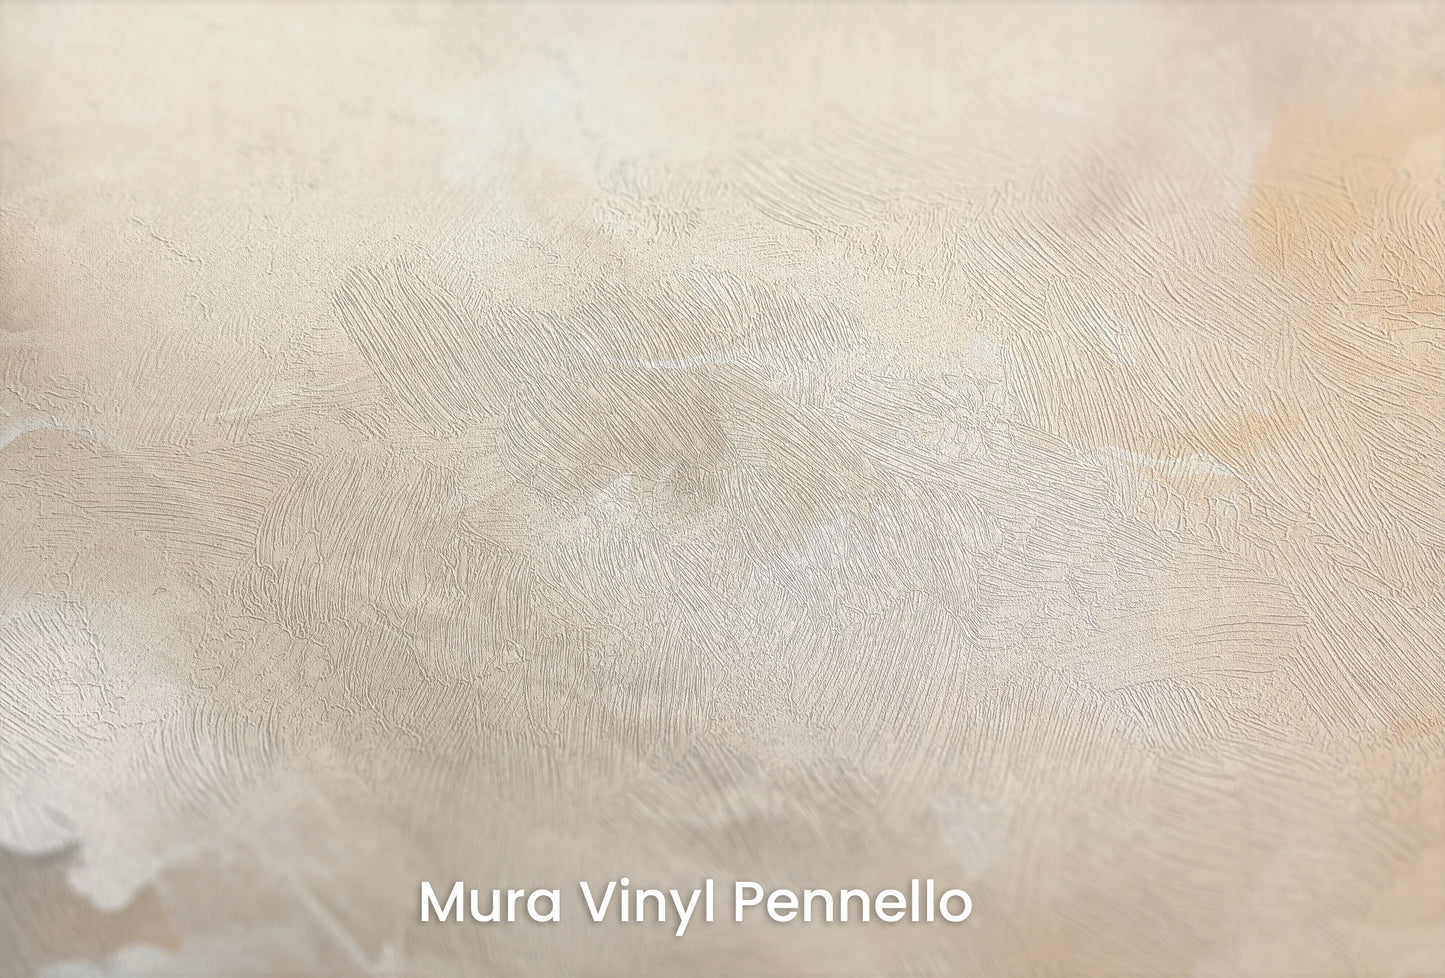 Zbliżenie na artystyczną fototapetę o nazwie Venusian Twilight na podłożu Mura Vinyl Pennello - faktura pociągnięć pędzla malarskiego.